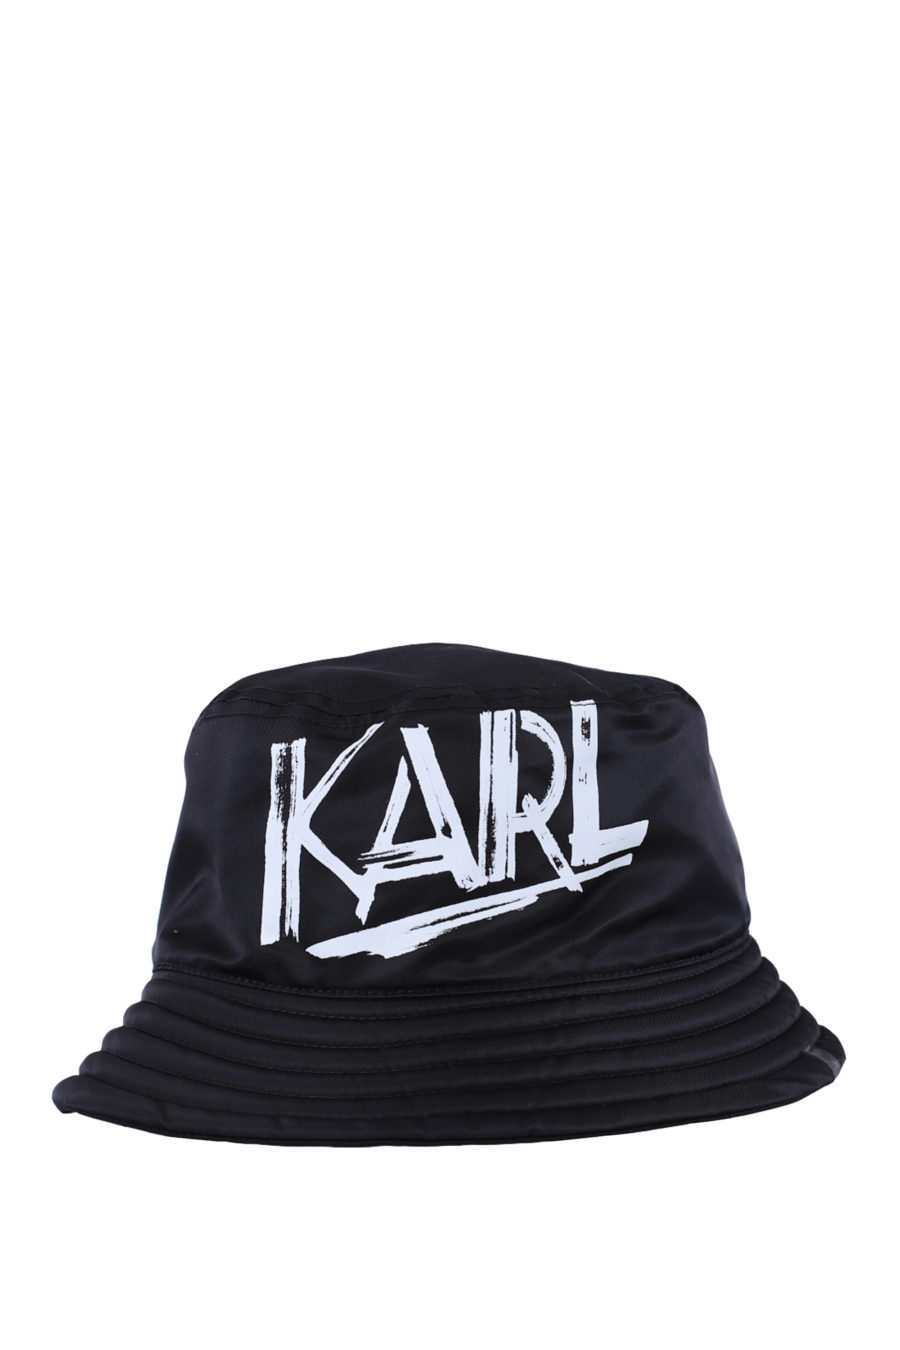 Sombrero de pescador negro reversible con logo blanco - IMG 0340